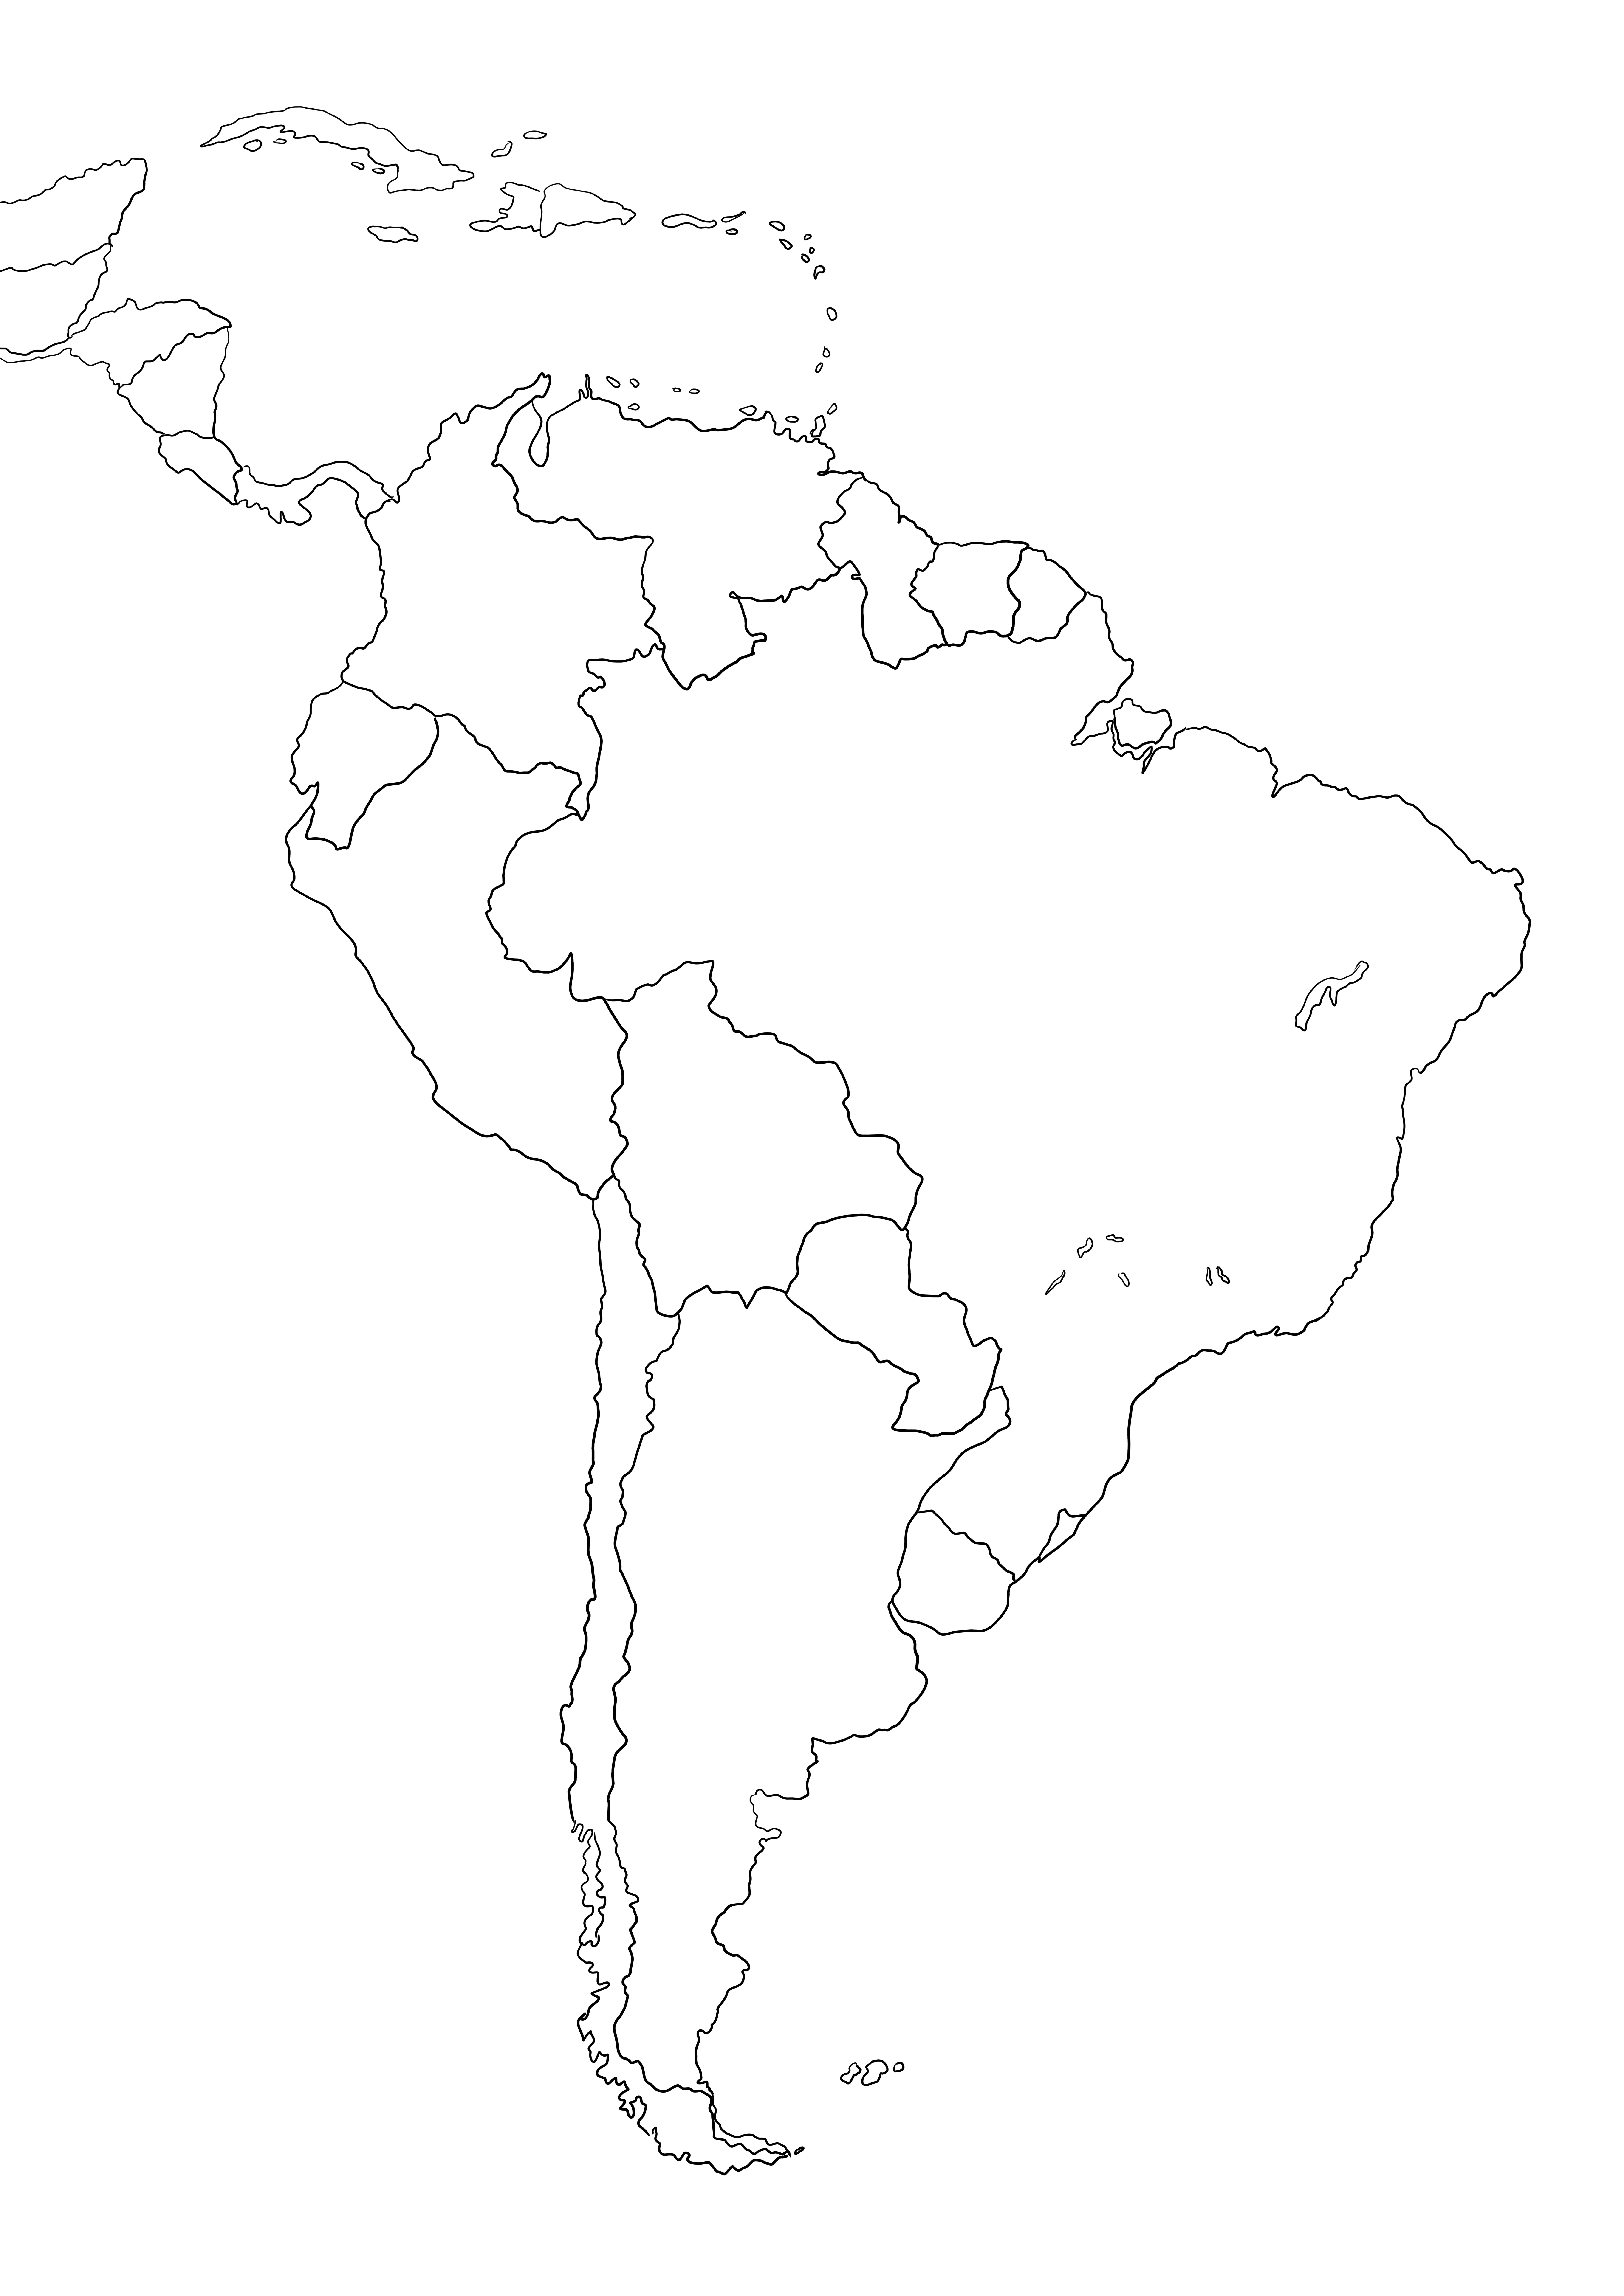 Mapa da América do Sul grátis para colorir ou salvar para mais tarde